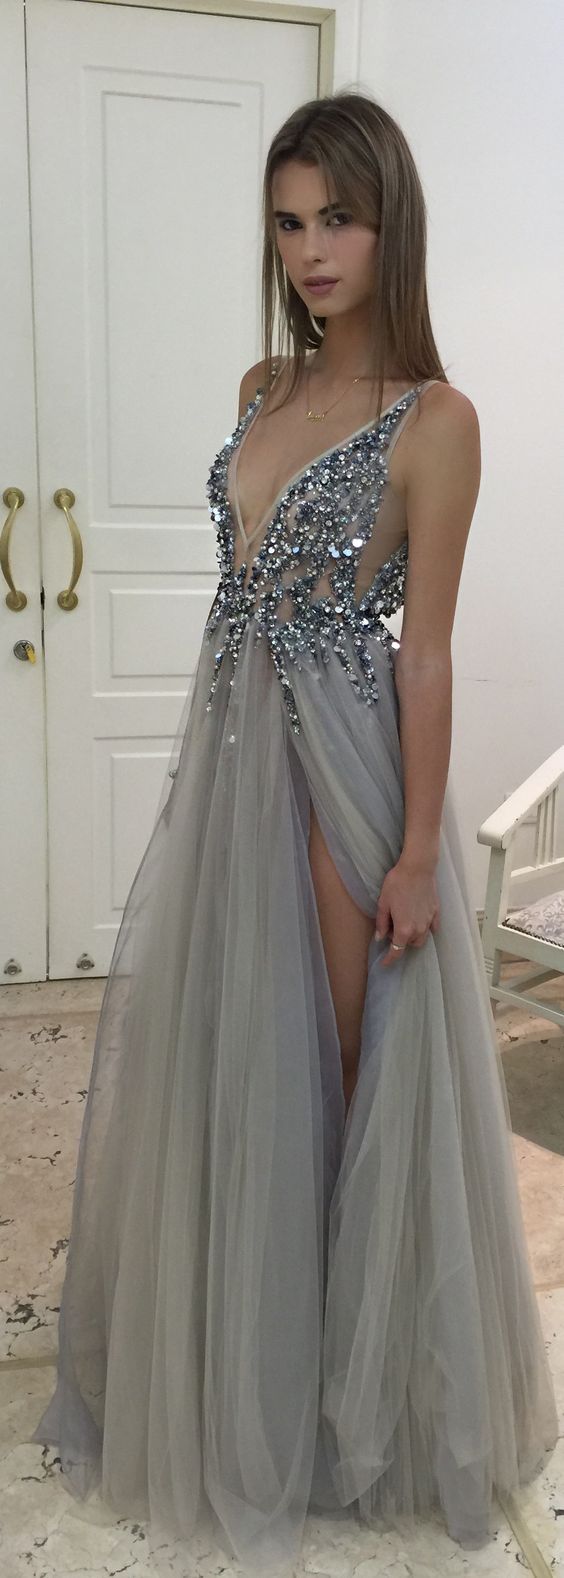 Floor Length V Neck Beaded Prom Dress With Side Slit